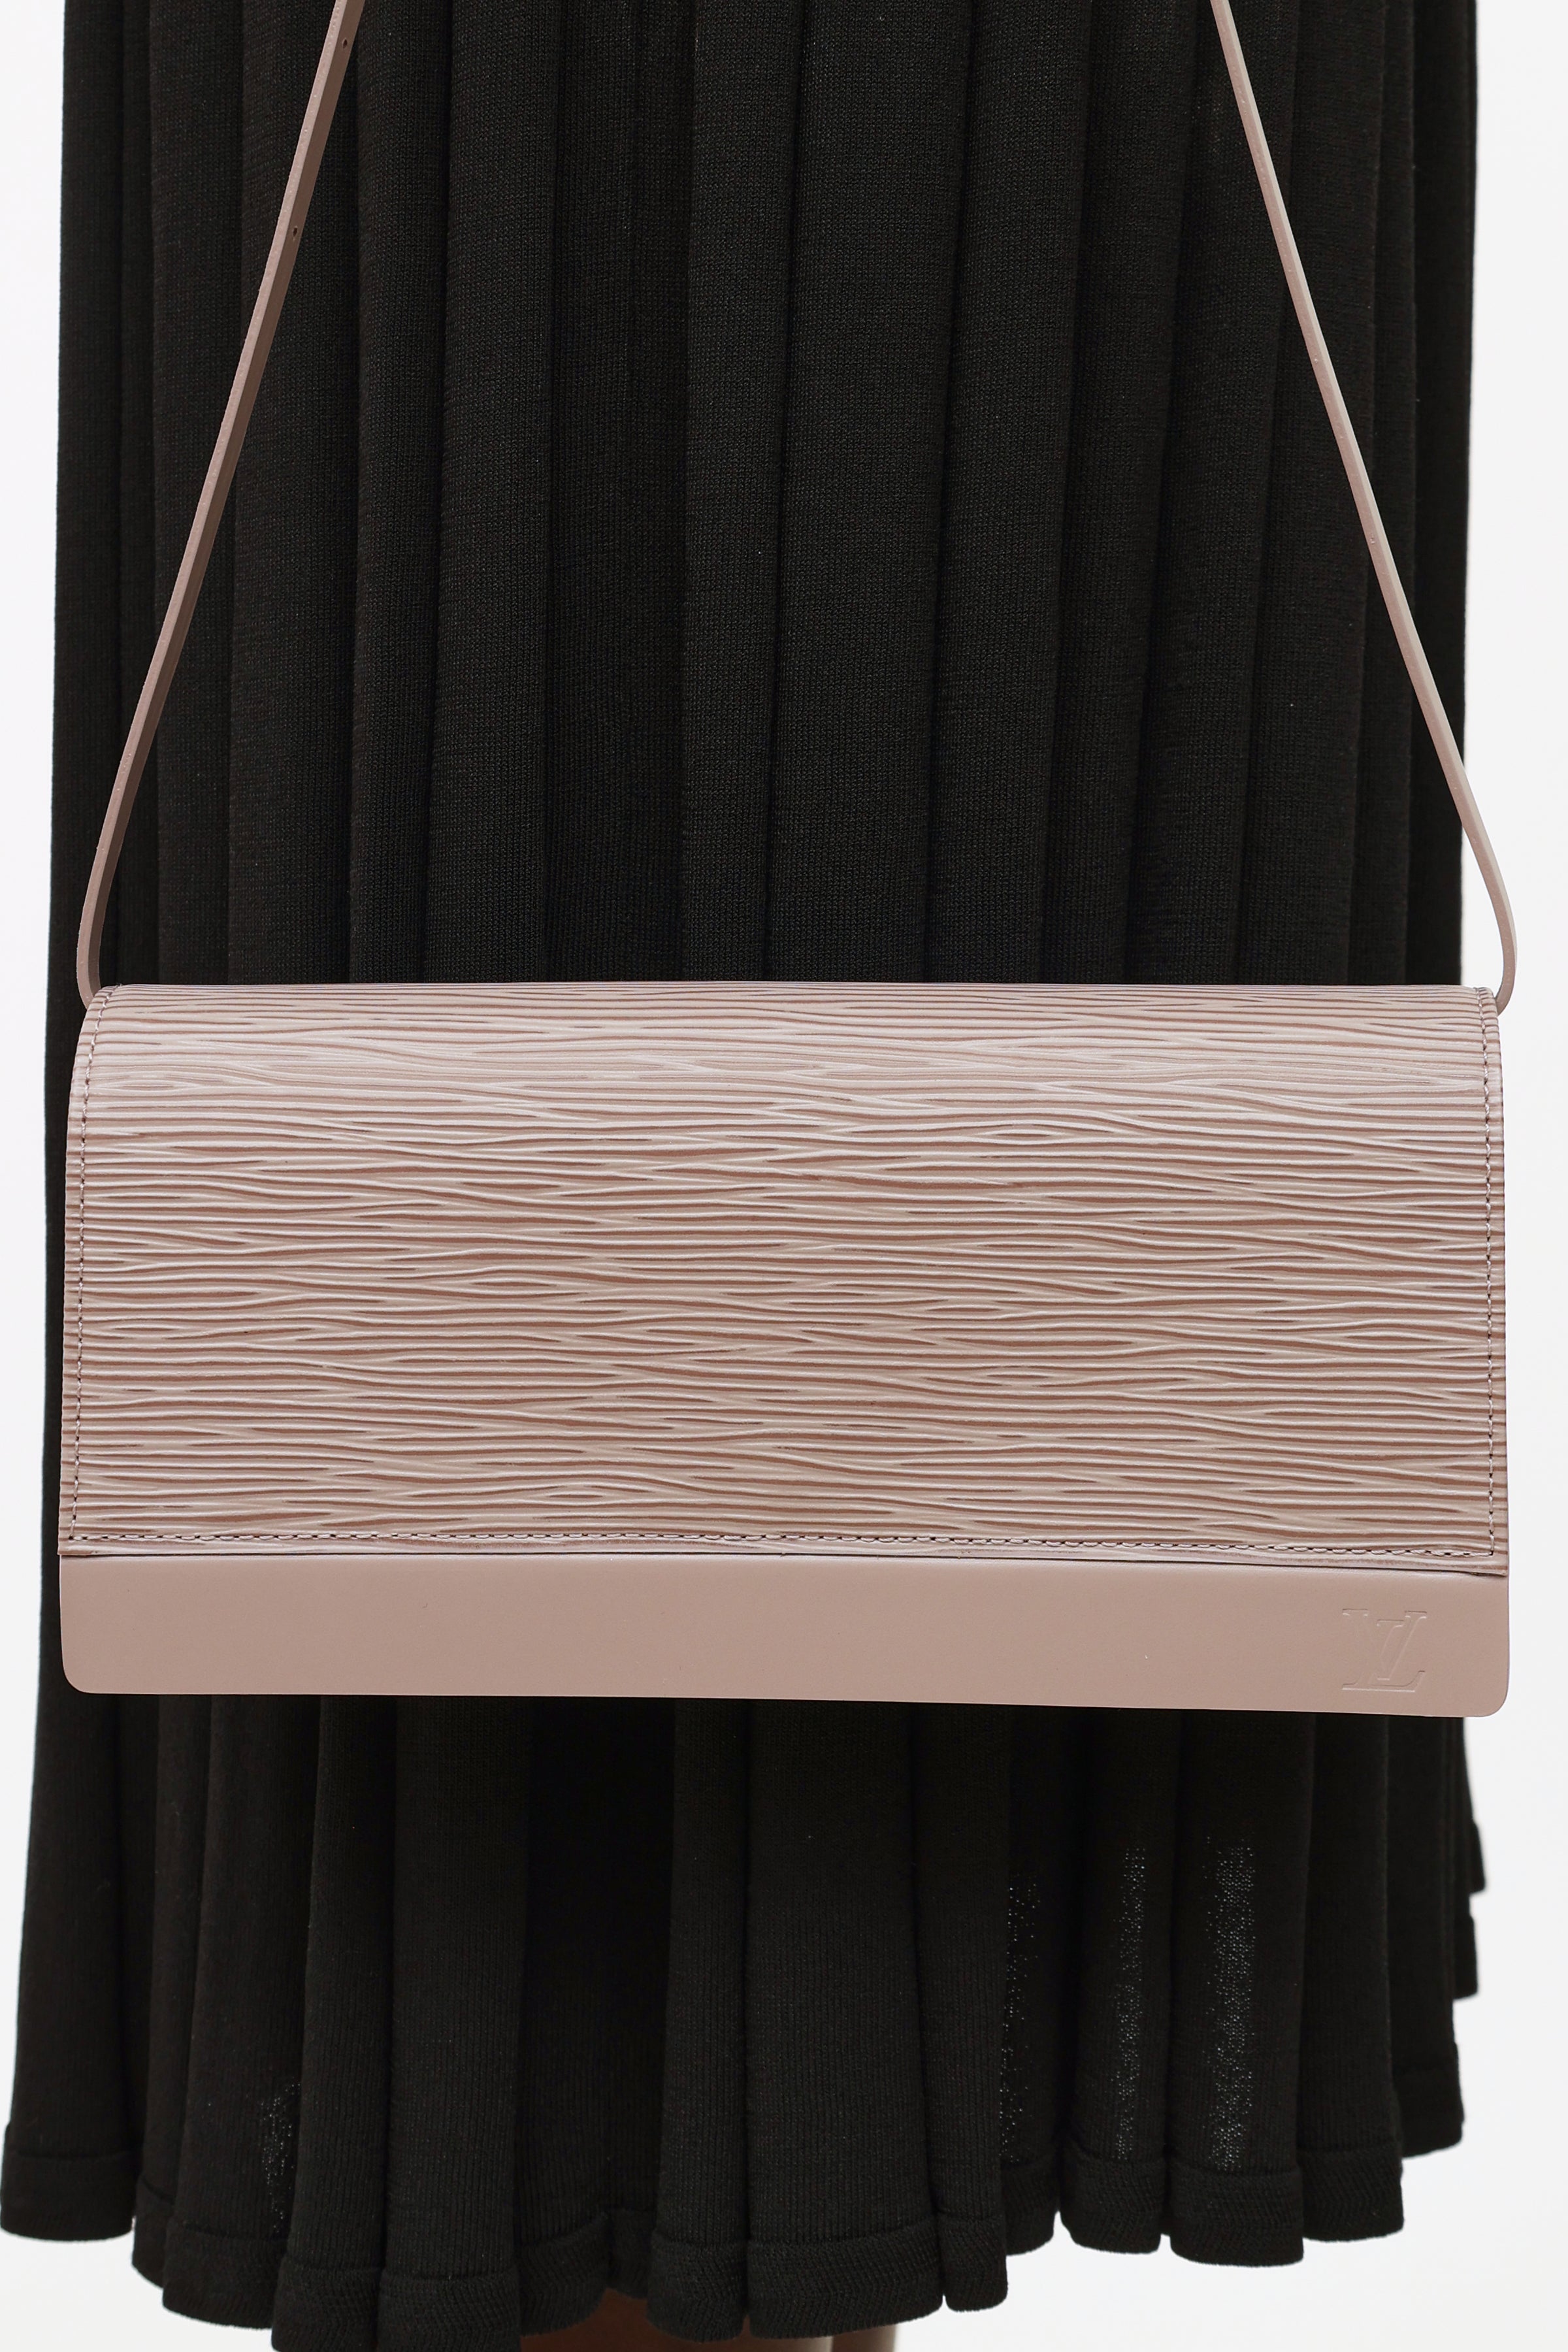 Louis Vuitton Honfleur Handbag 306992